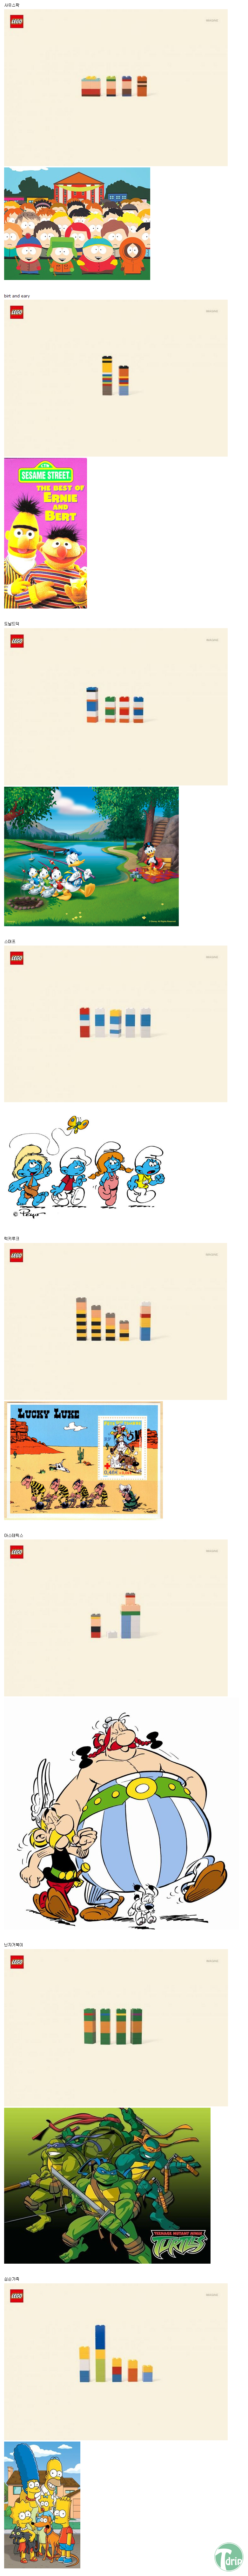 1.png : 레고로 만든 만화속 캐릭터들.JPG